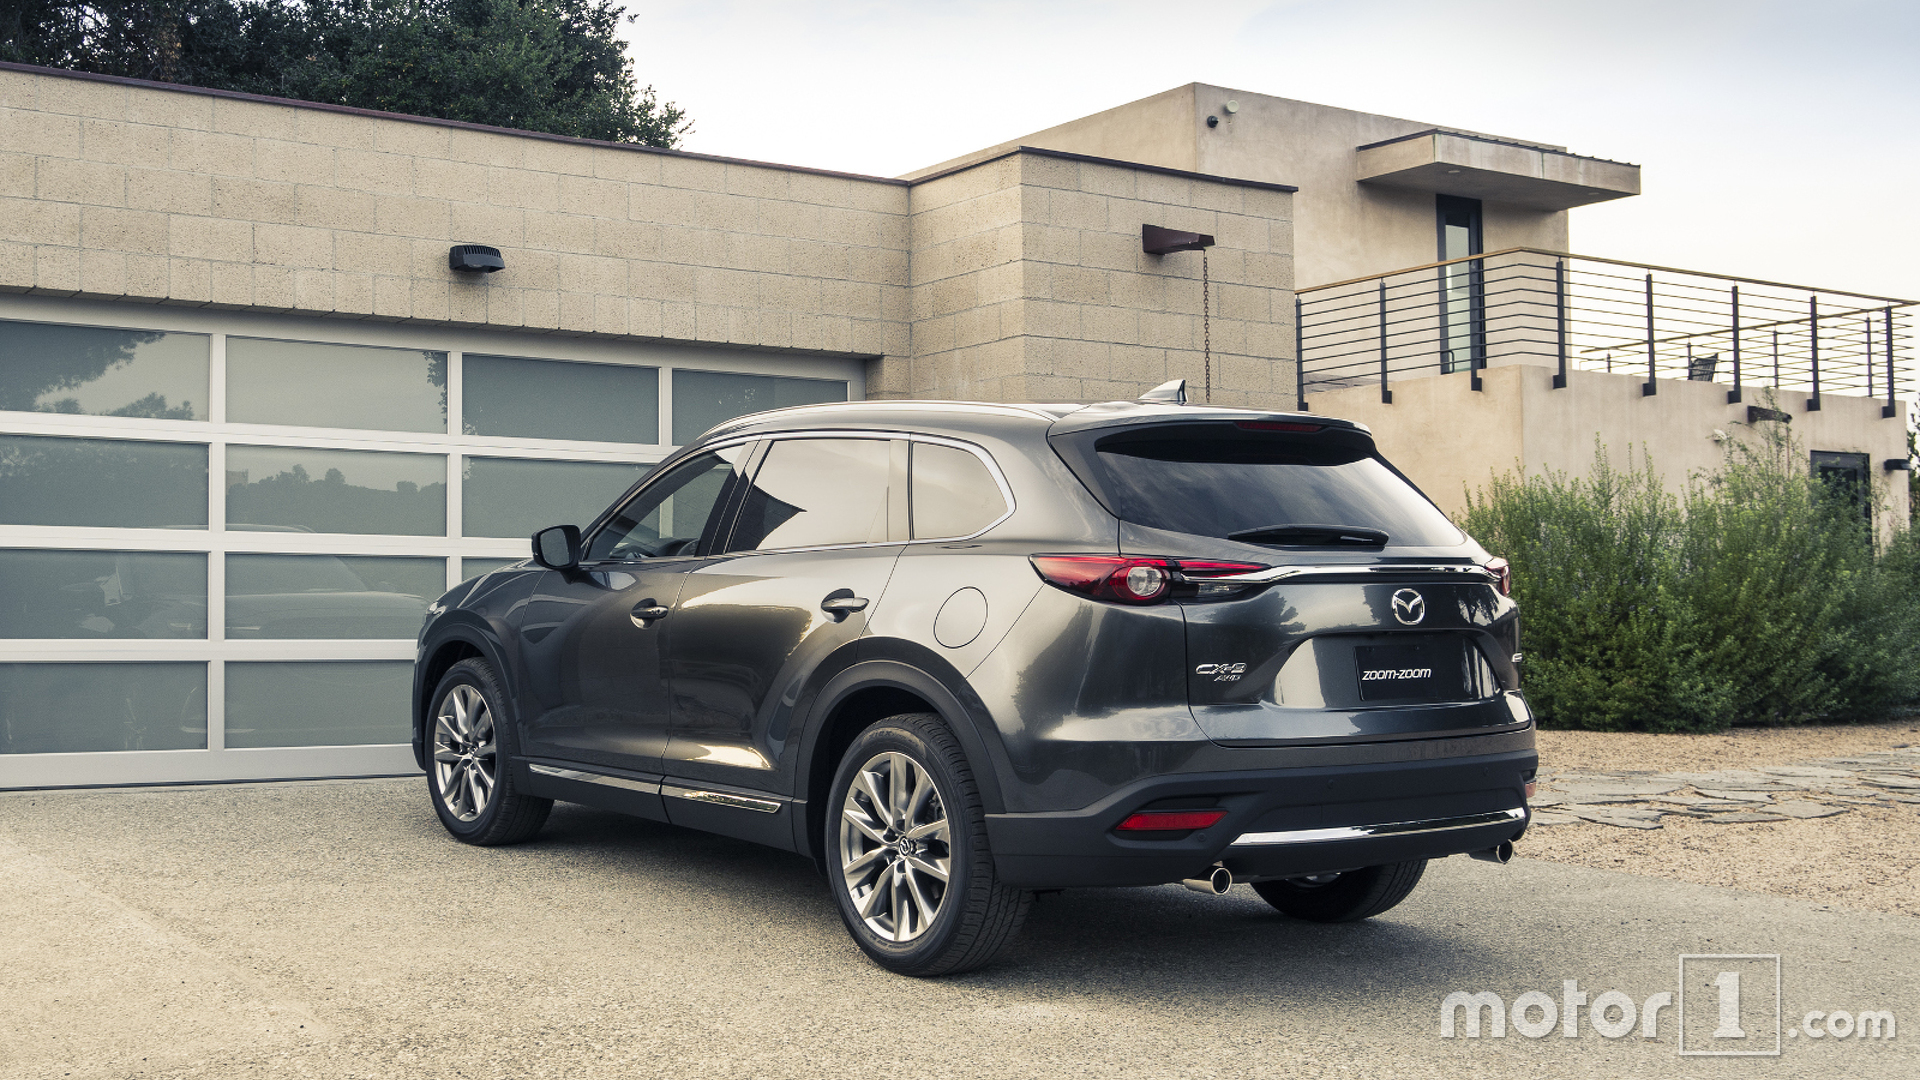 2016 Mazda CX-9 priced from $31,520 Mazda | Motor1.com